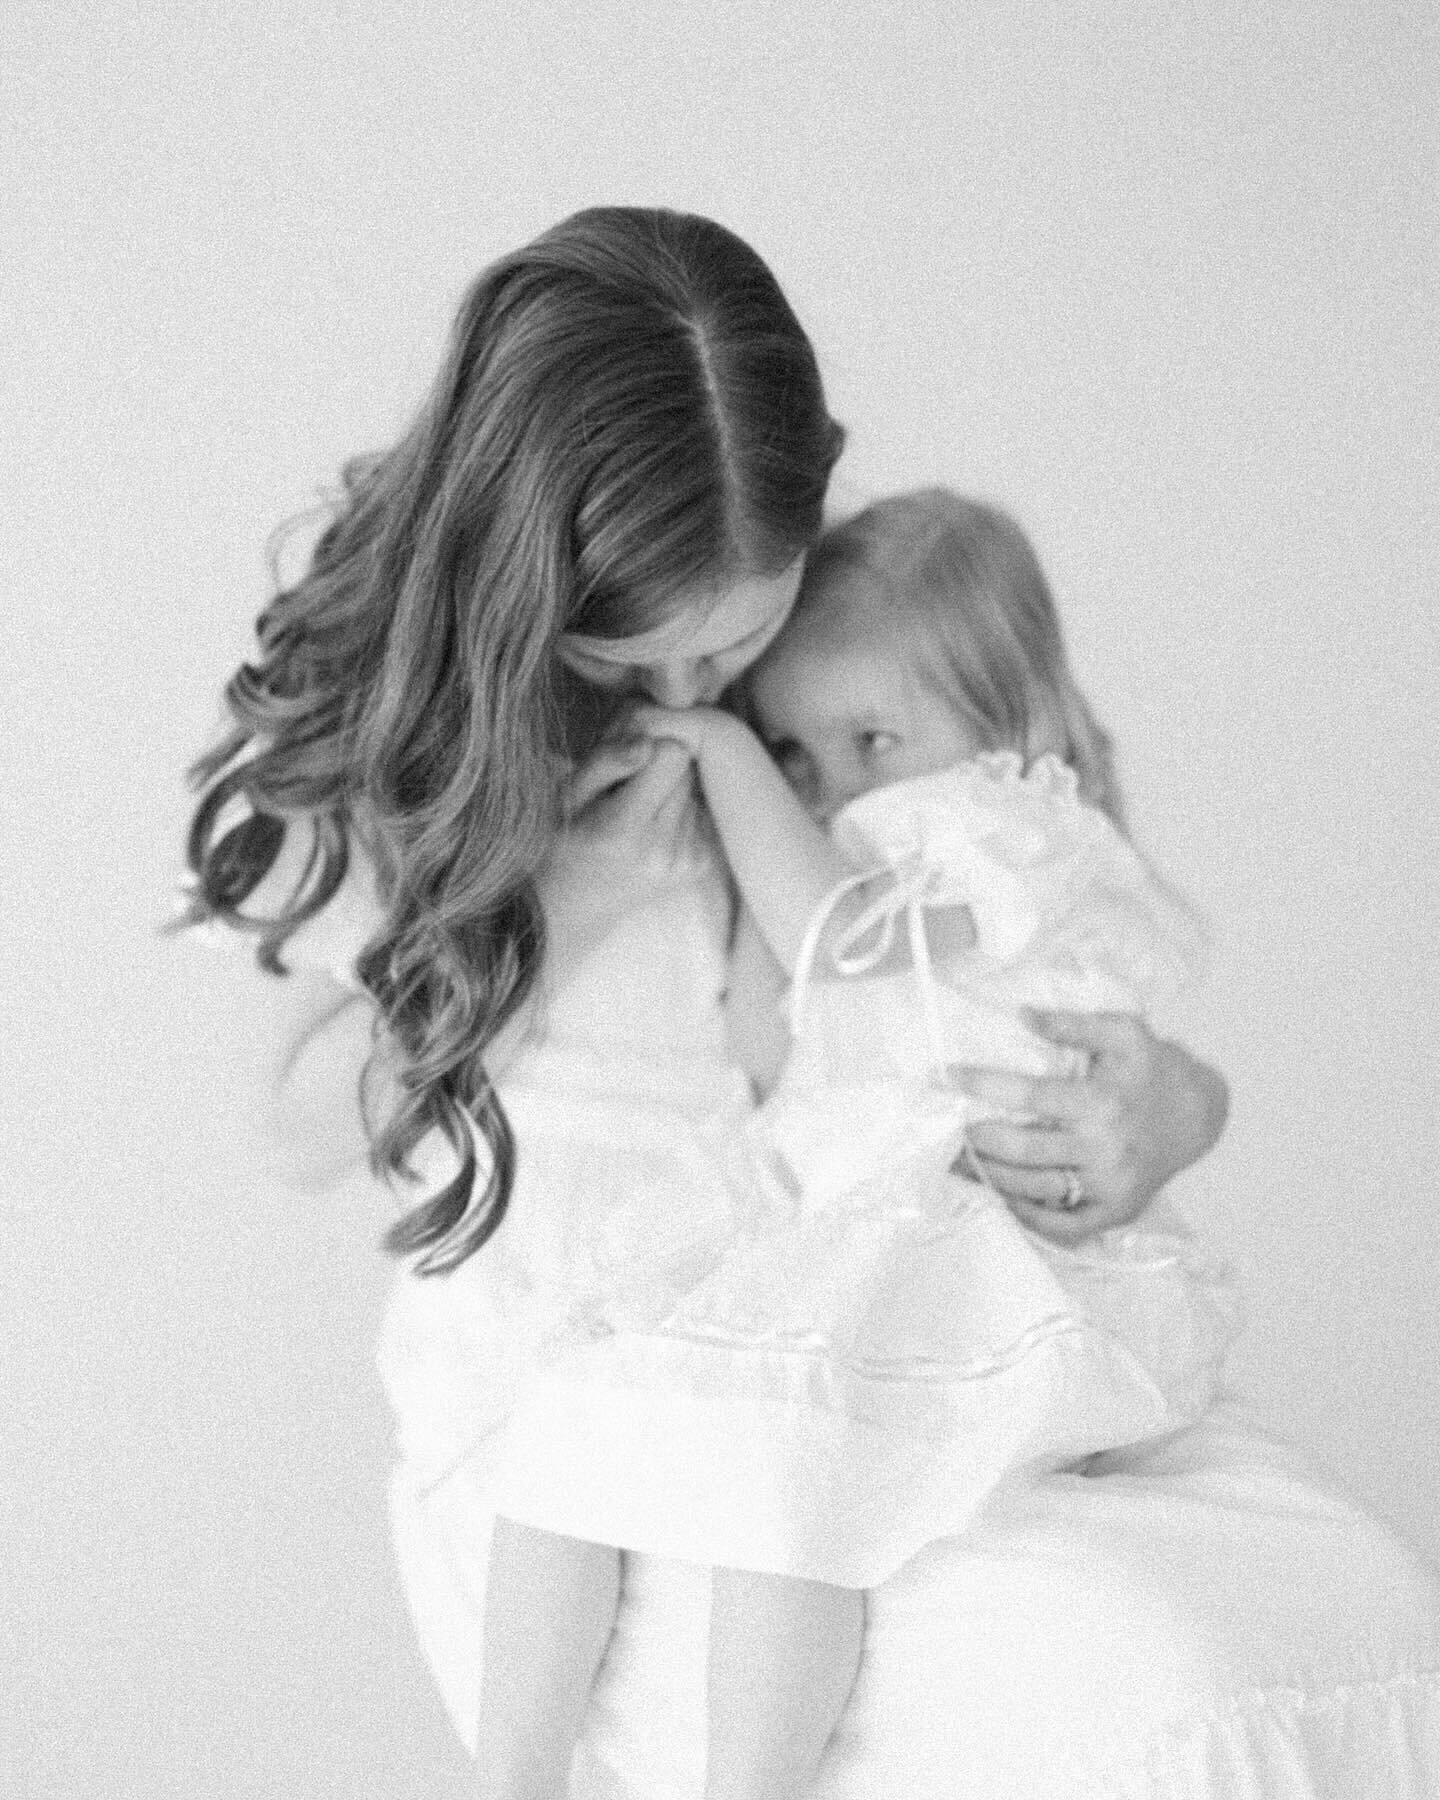 Motherhood minis were an absolute dream 🤍